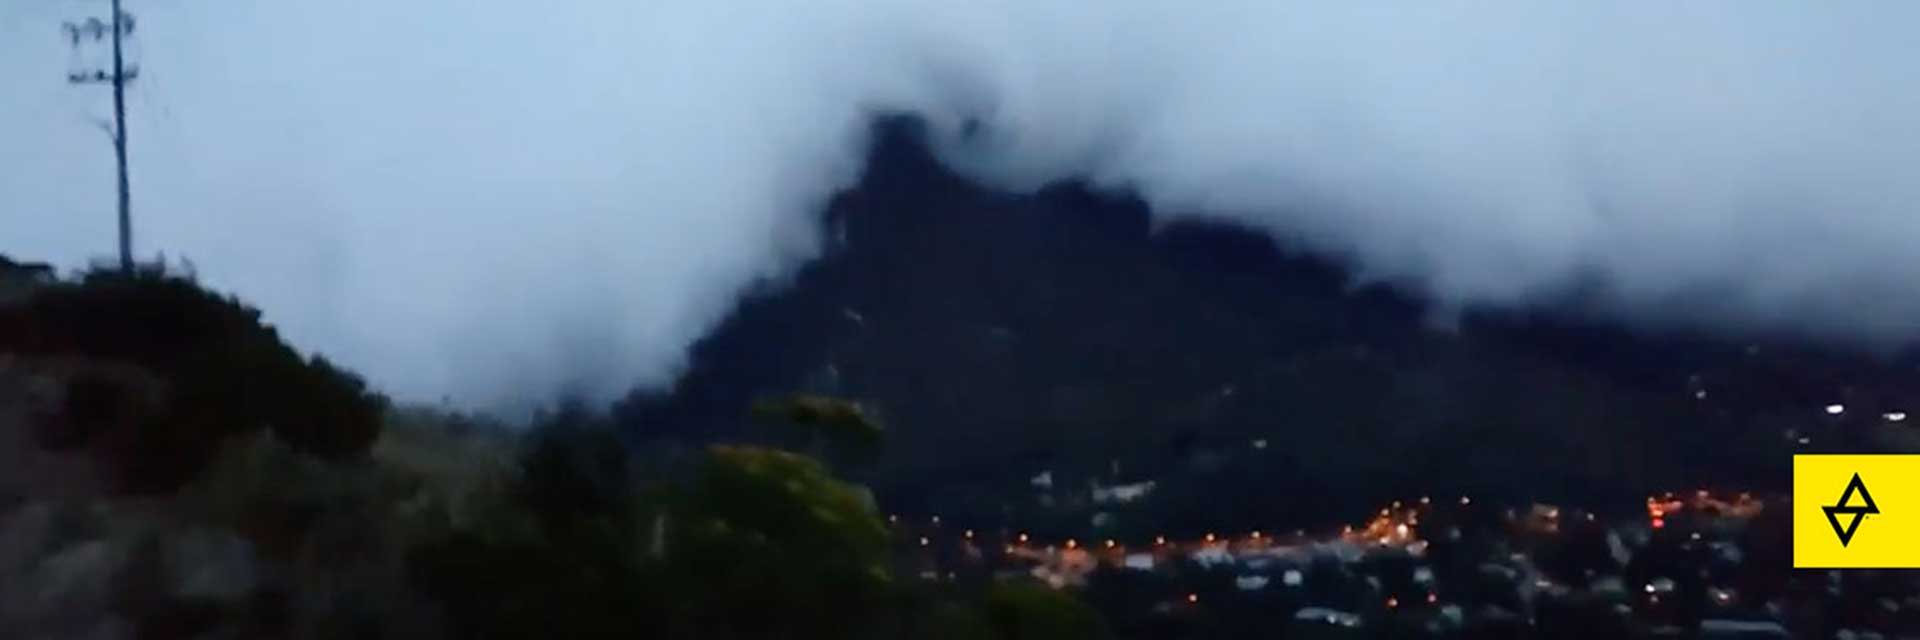 Lightning on the mountain